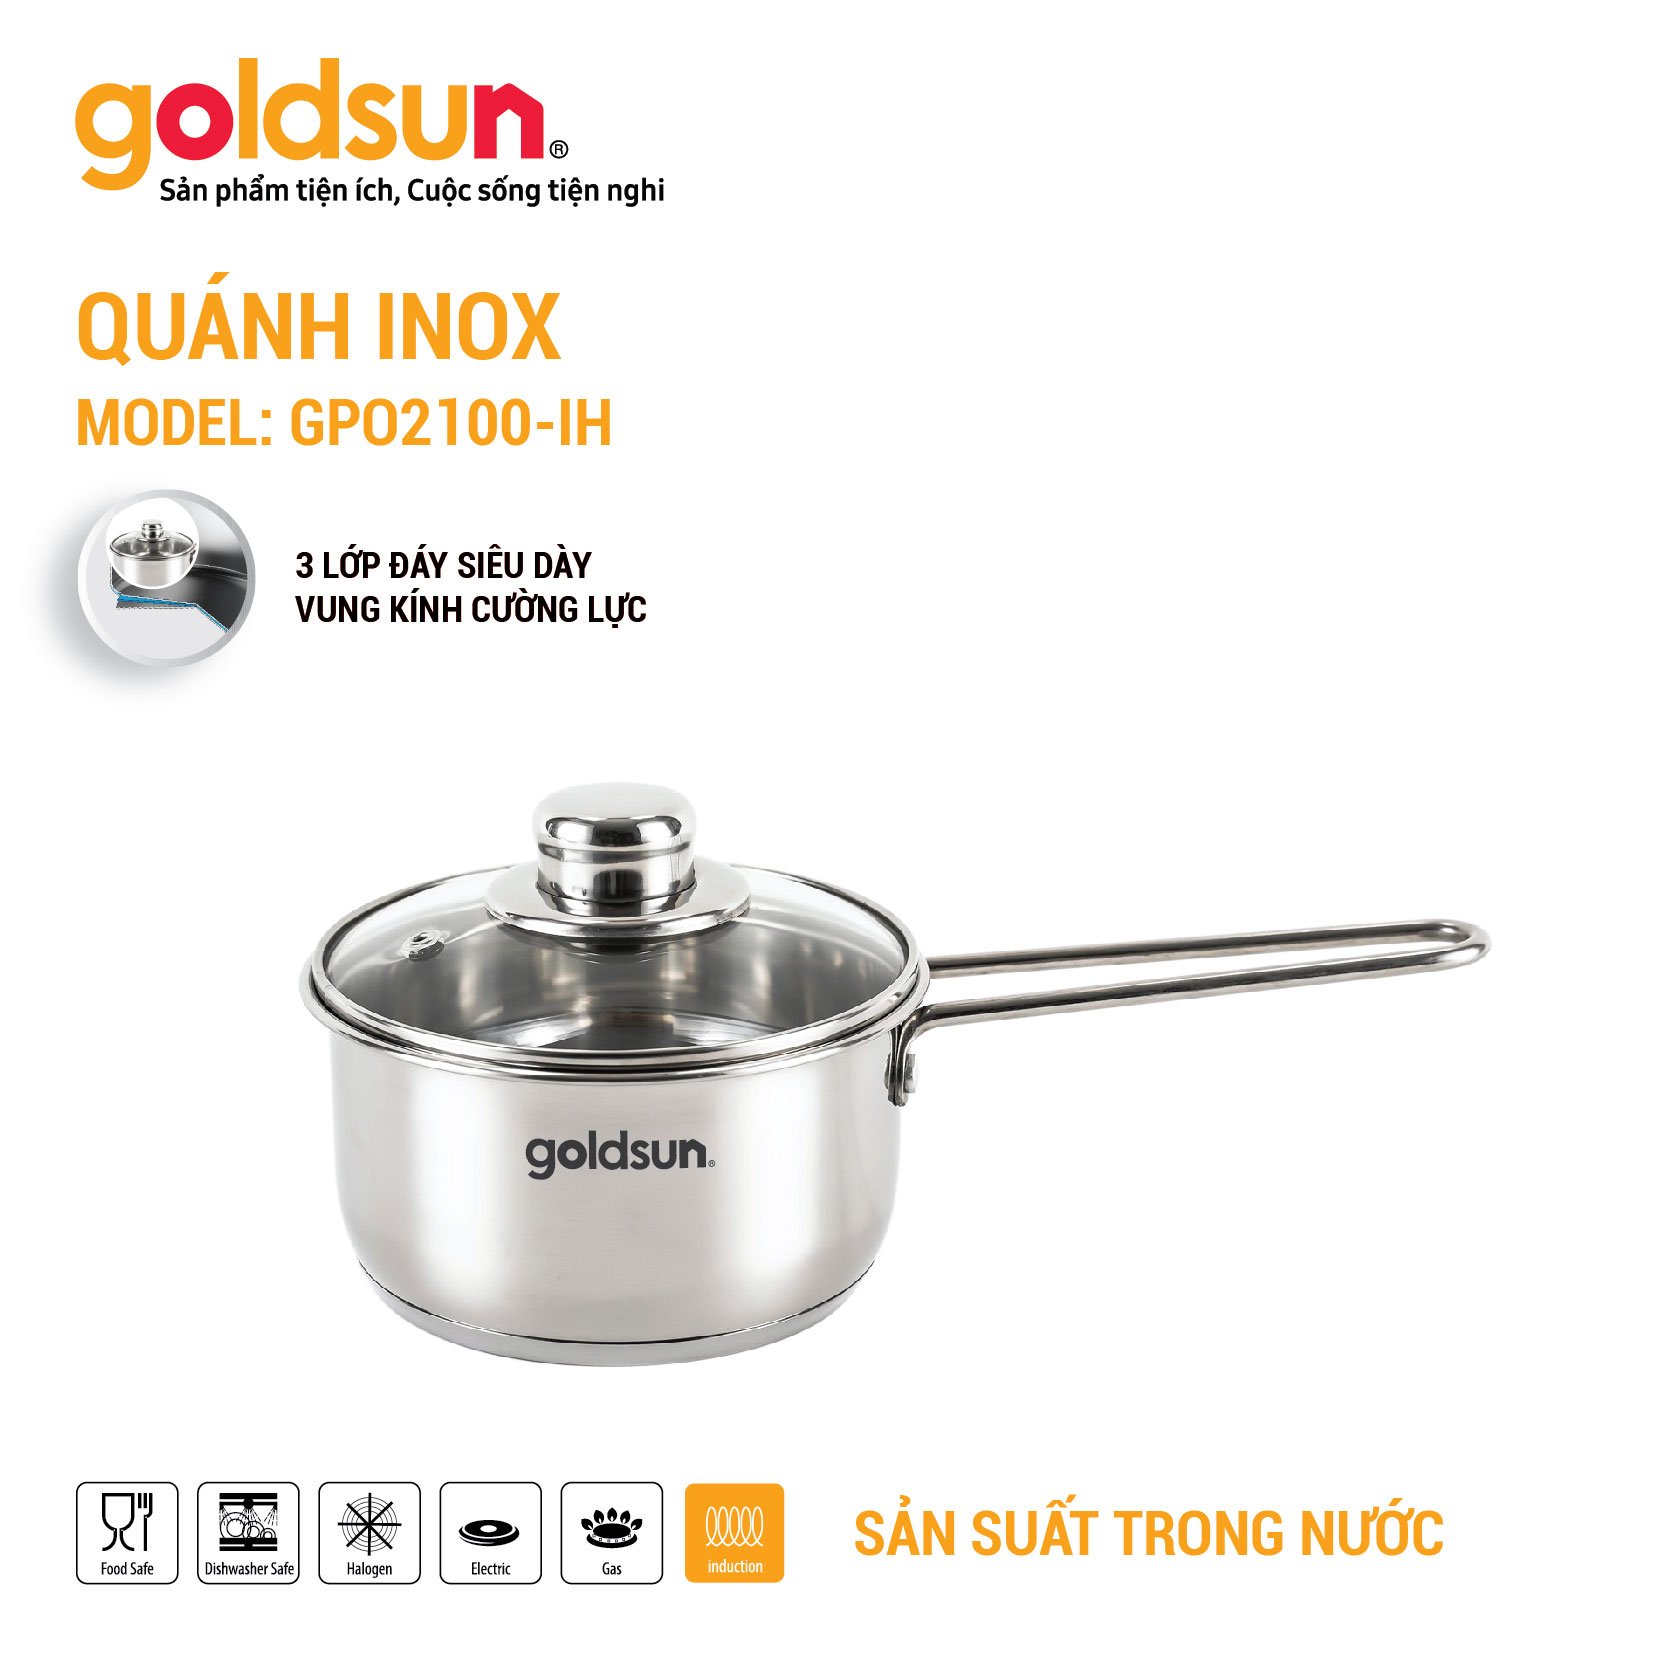 Quánh inox Goldsun GPO2100-IH